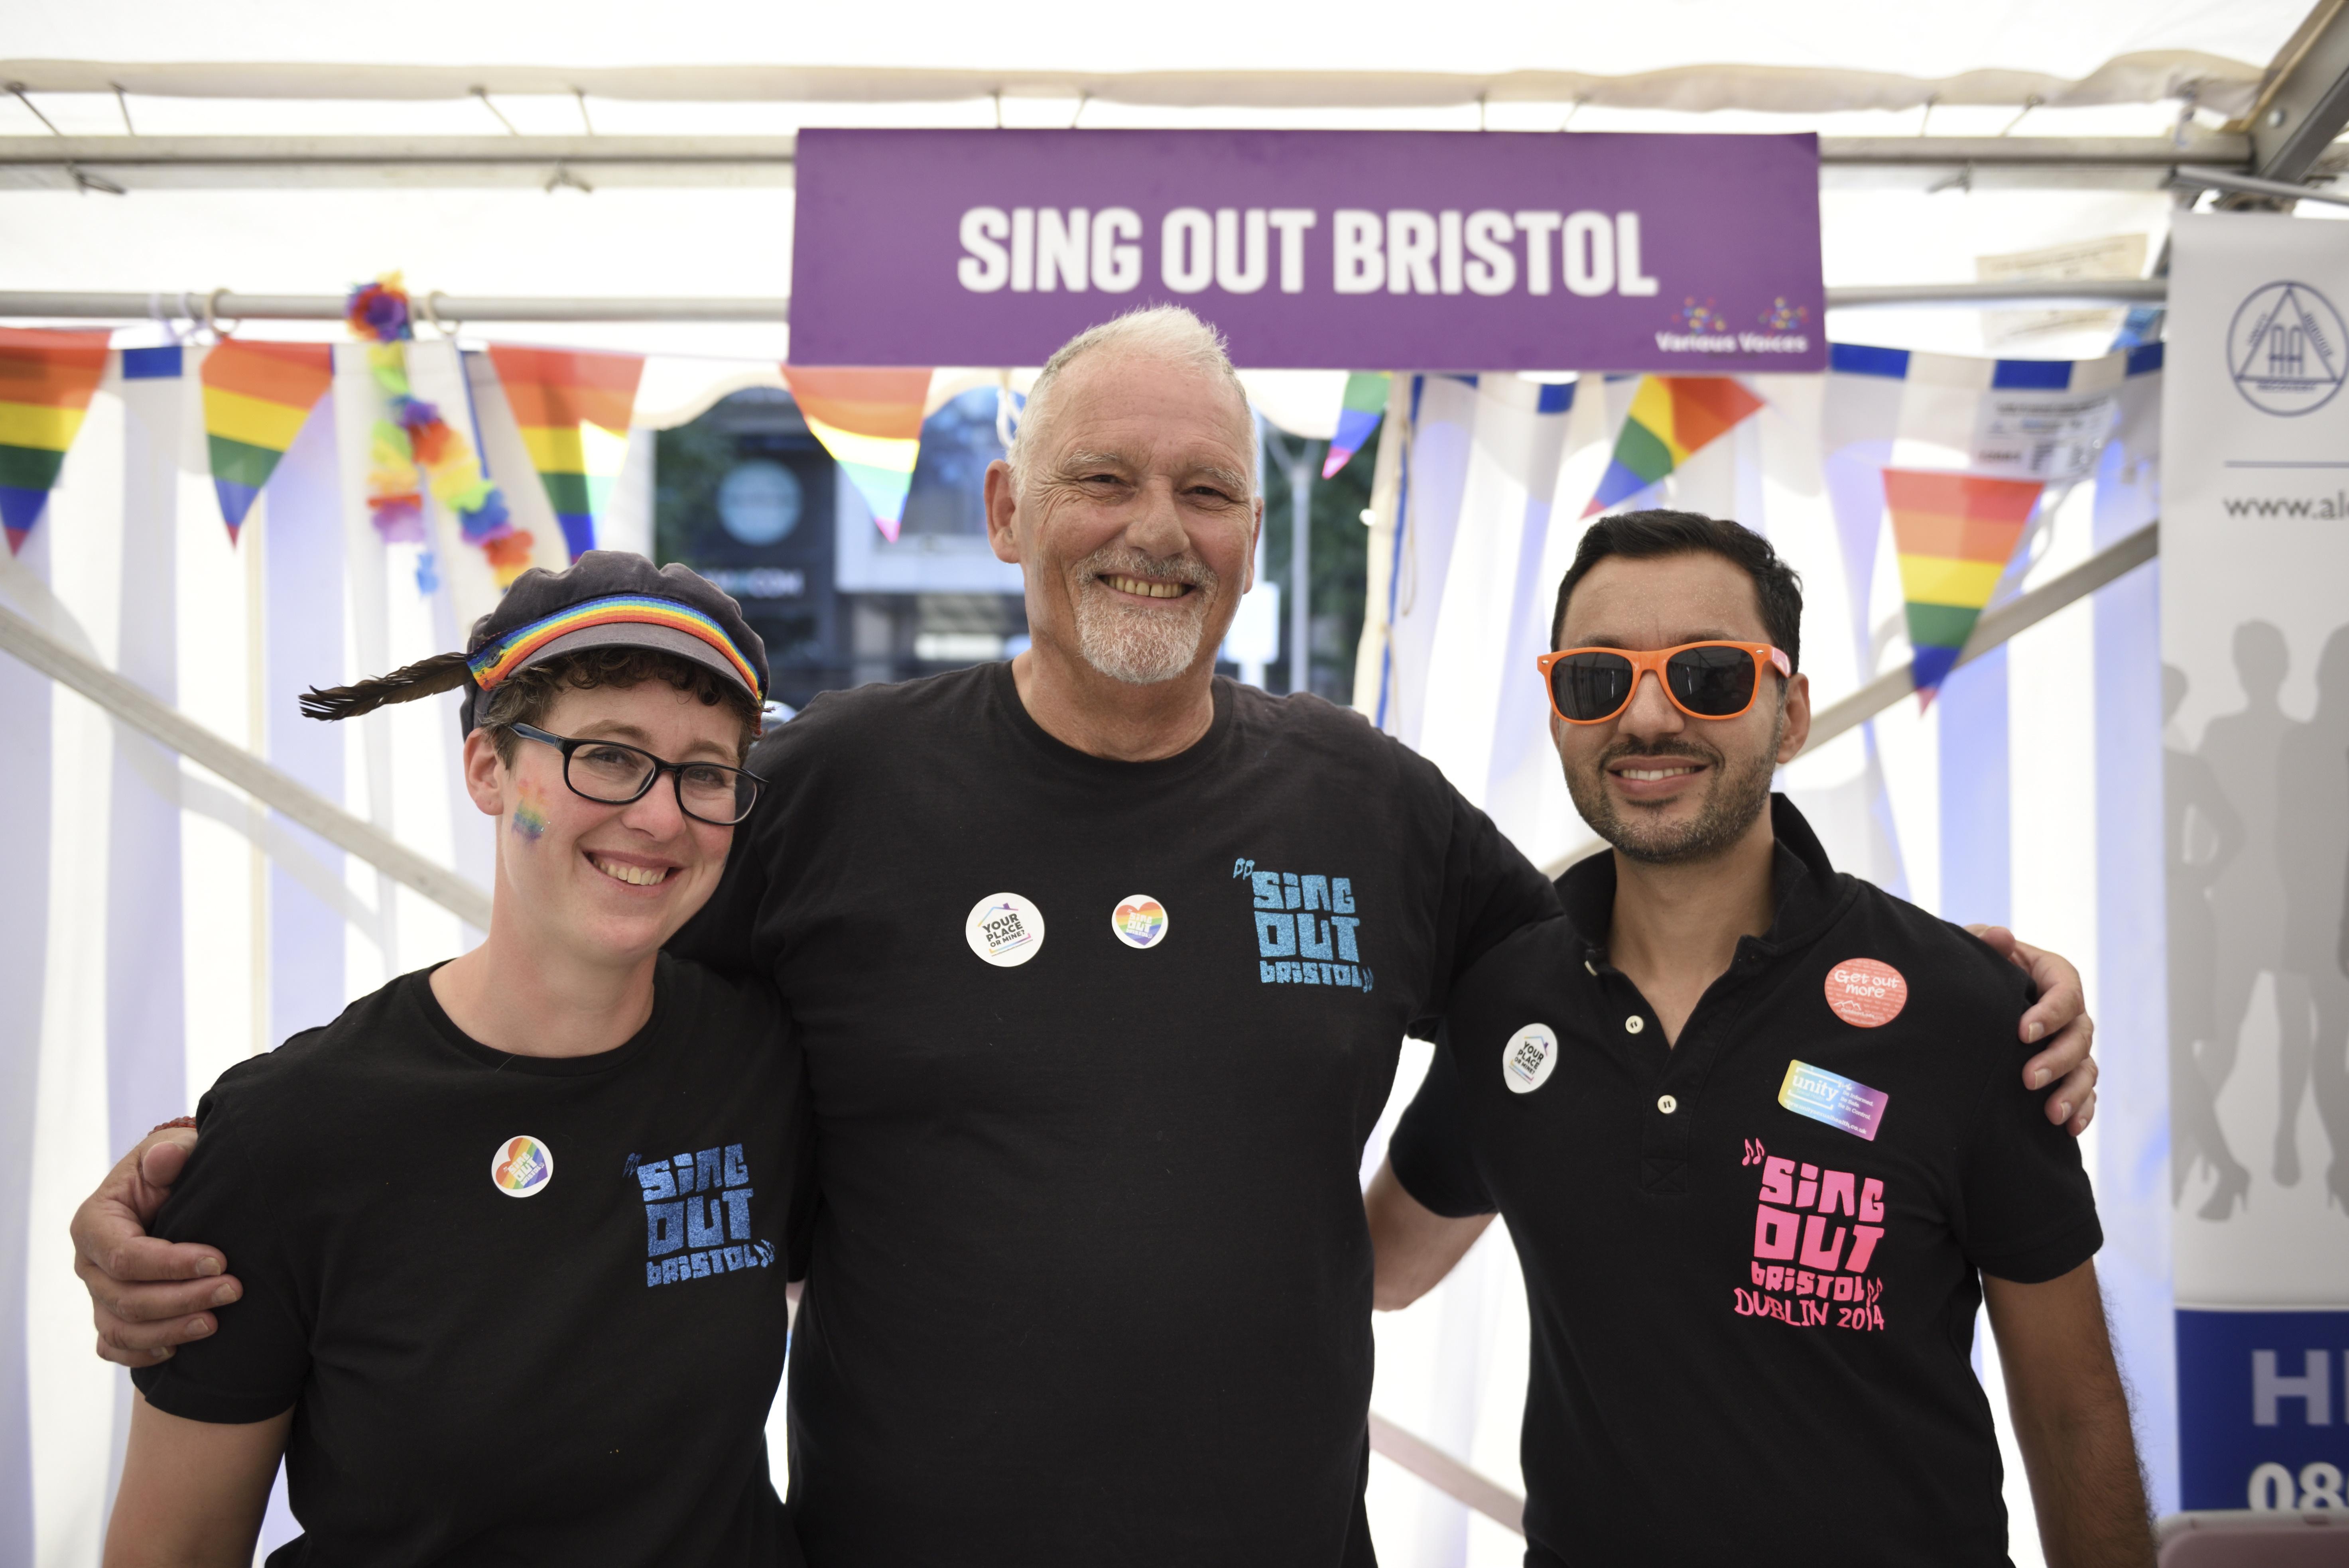 Bristol Pride day 2019